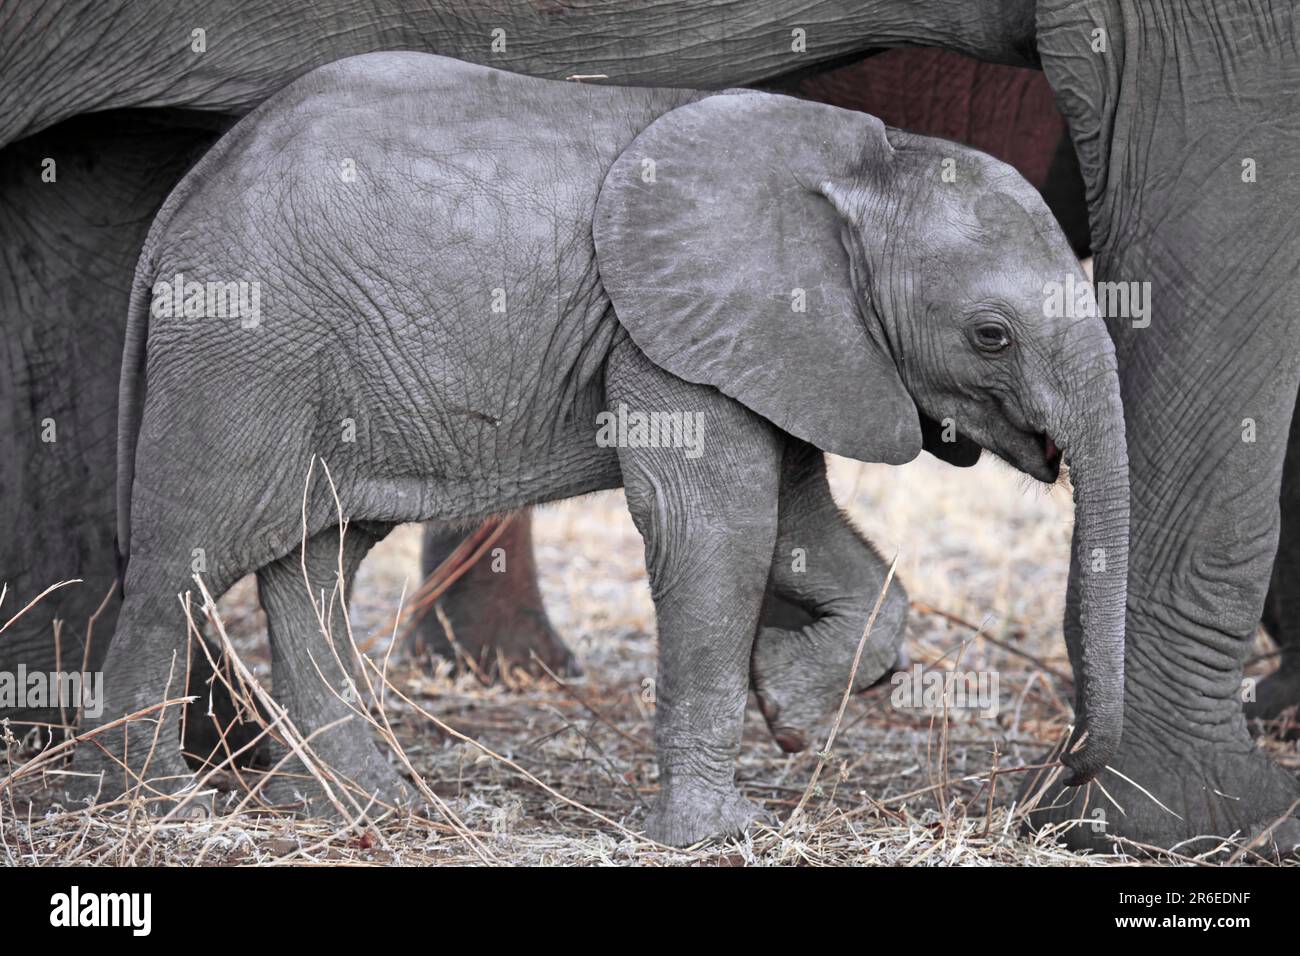 Young elephant, Chobe National Park, Botswana, young elephant, Chobe, Botswana Stock Photo